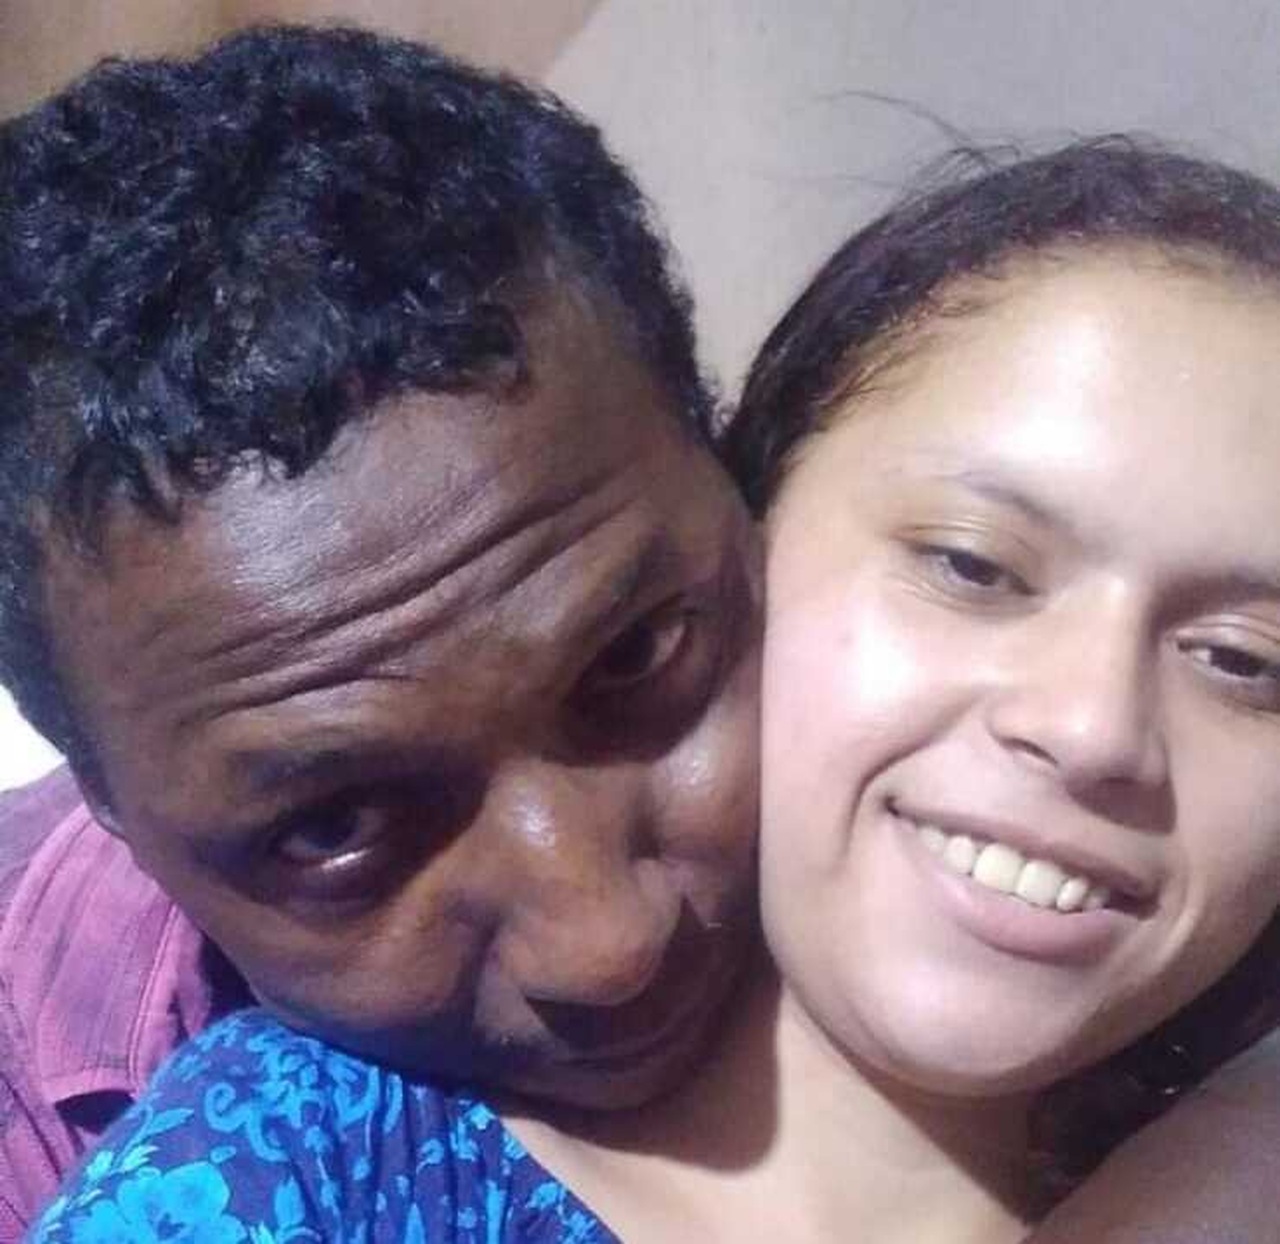 AFLIÇÃO: Familiares procuram por casal desaparecido que saiu do Maranhão com destino a Silvanópolis do Tocantins; saiba como ajudar